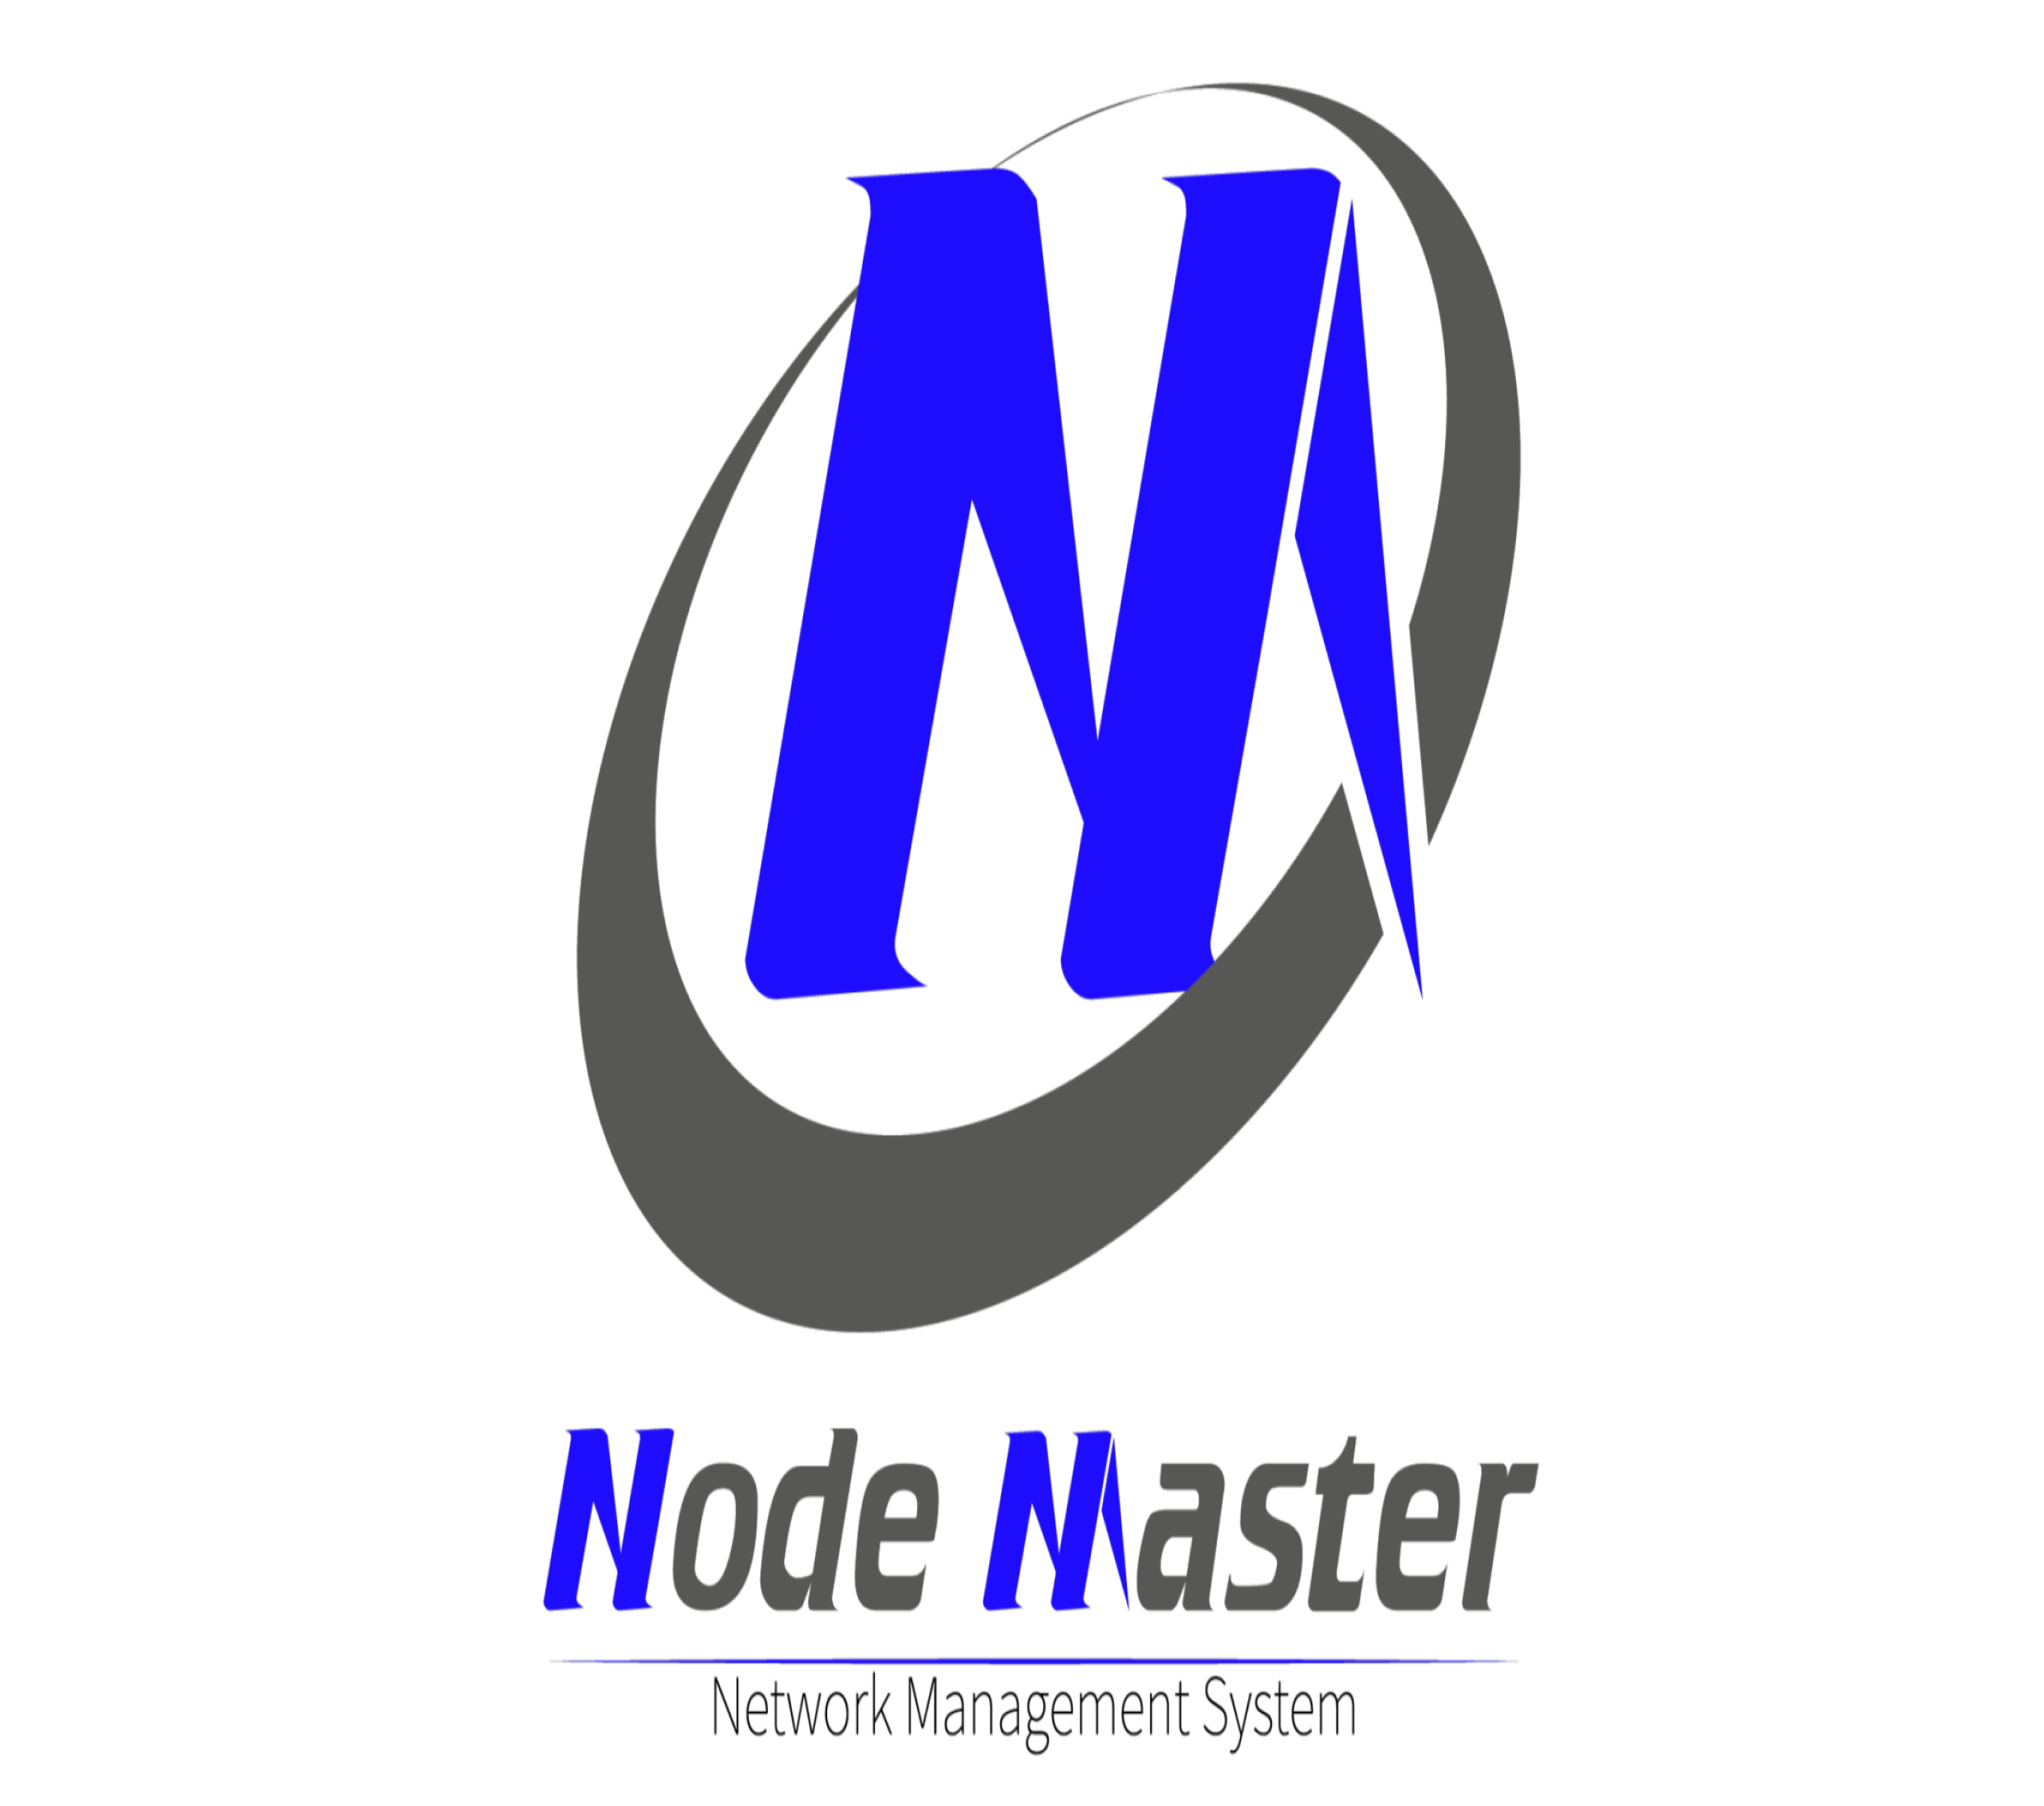 <p dir="rtl">Node Master<br />
سامانه مدیریت شبکه</p>
